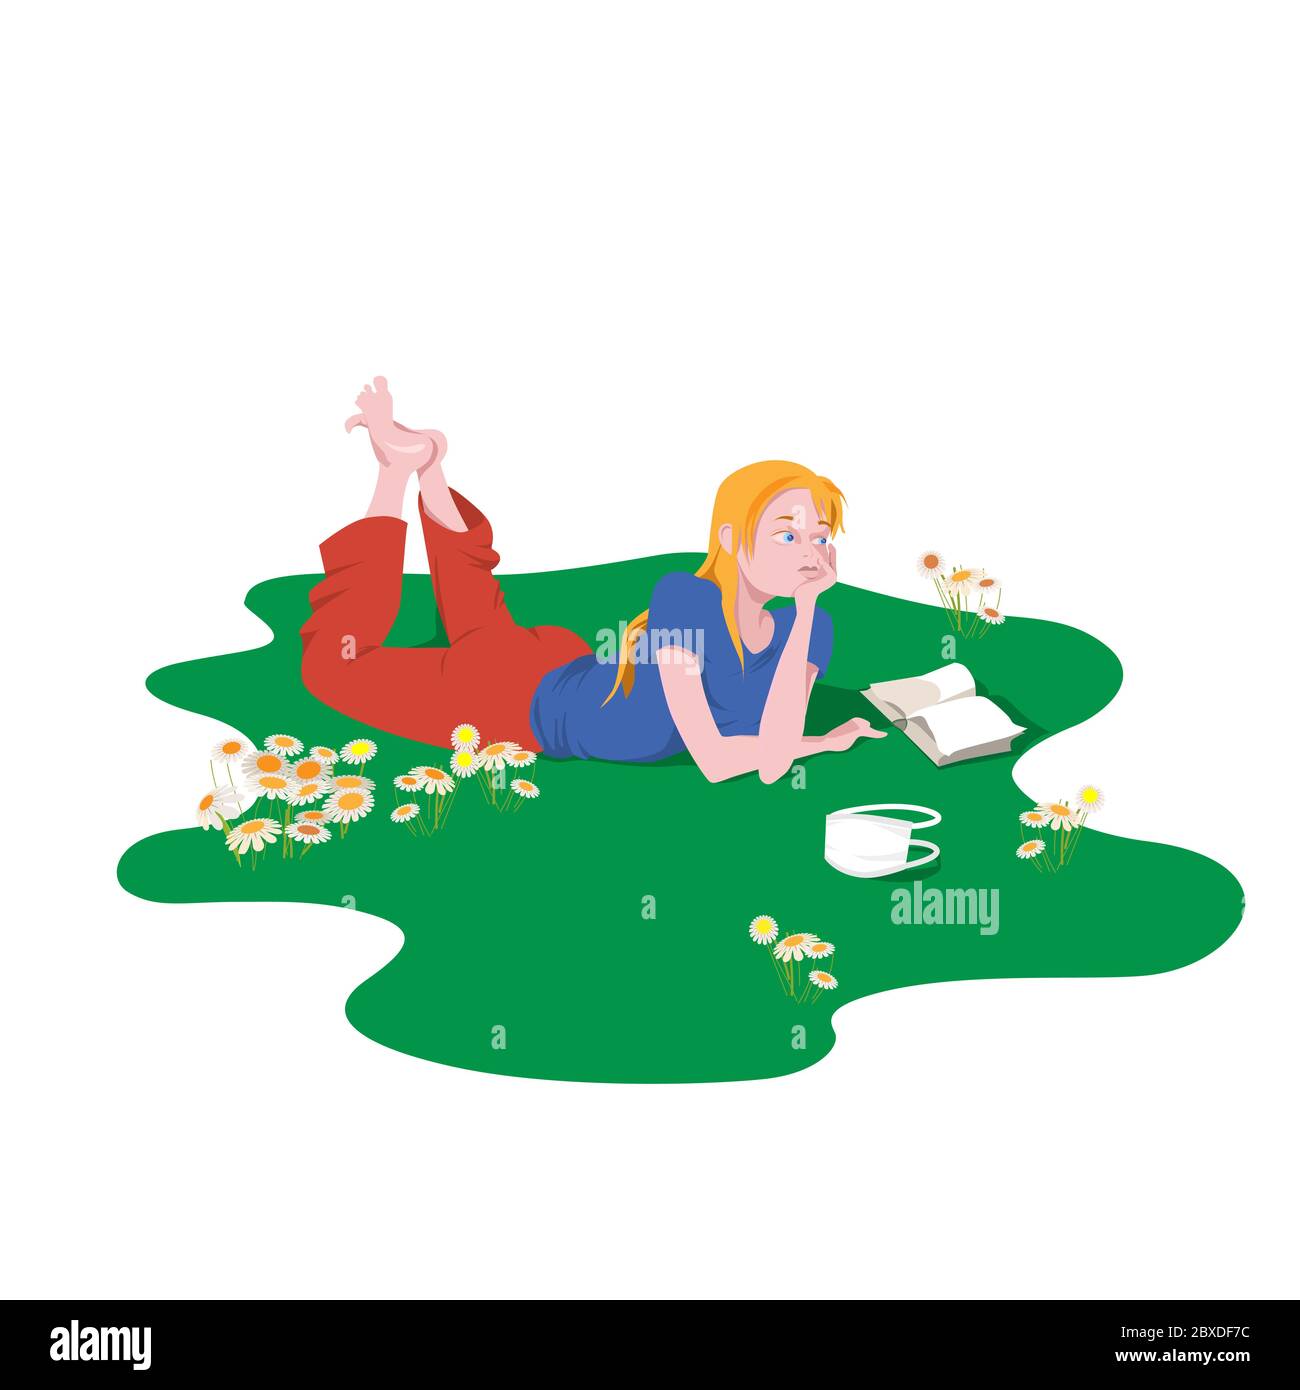 Una ragazza carina sognante si trova su un prato con un libro tra i fiori di margherite. Illustrazione vettoriale dei caratteri cartoni animati in stile piatto. Illustrazione Vettoriale